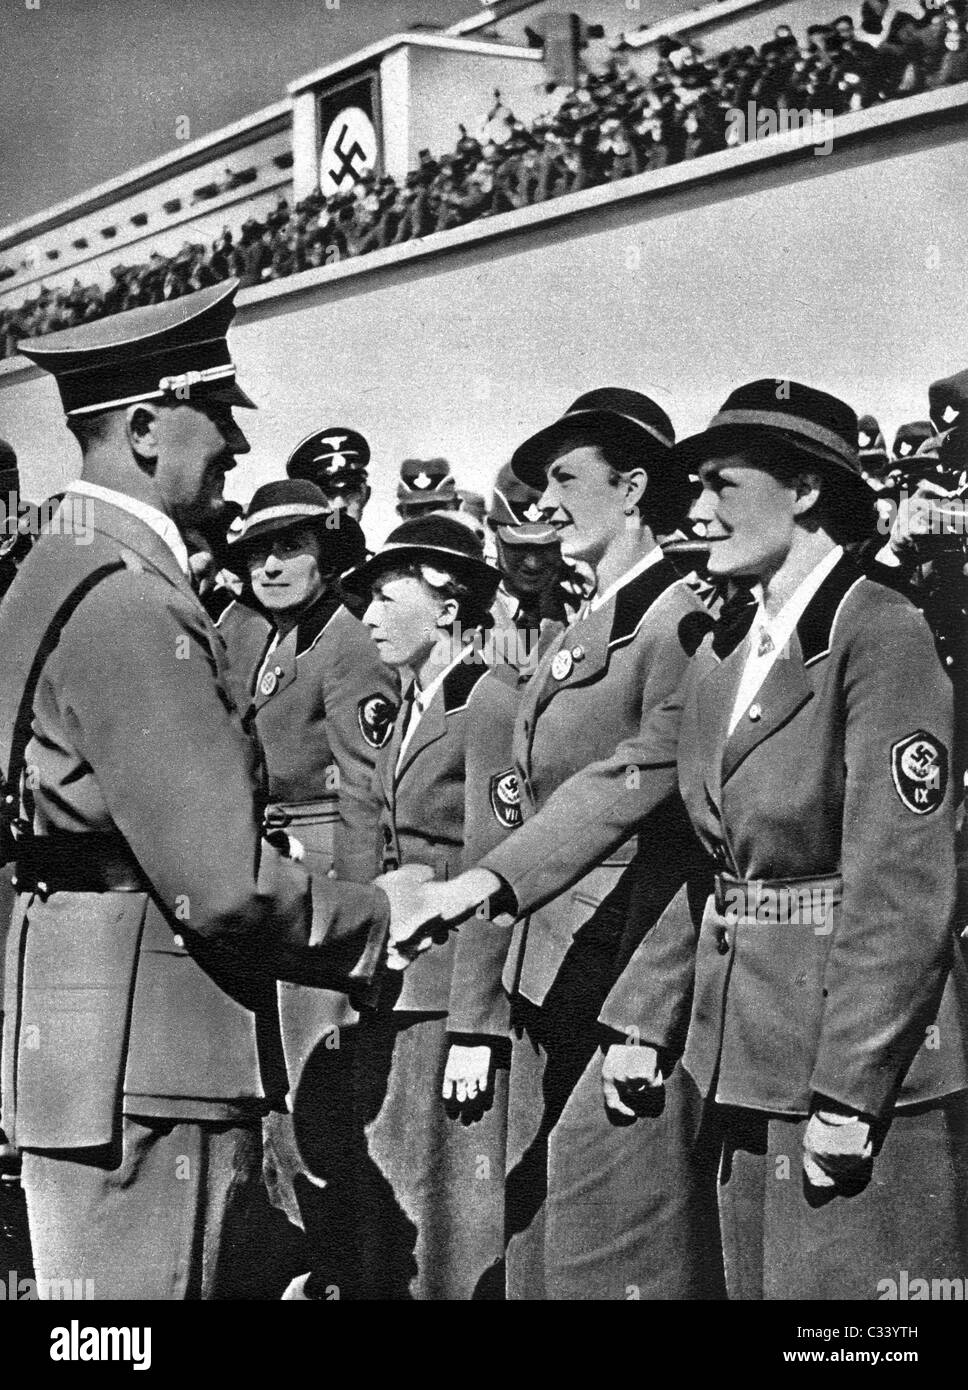 RADWJ (junge Damen Arbeitsorganisation) Offiziere des Führers Adolf Hitler Gruß. Deutschland c1939. Stockfoto